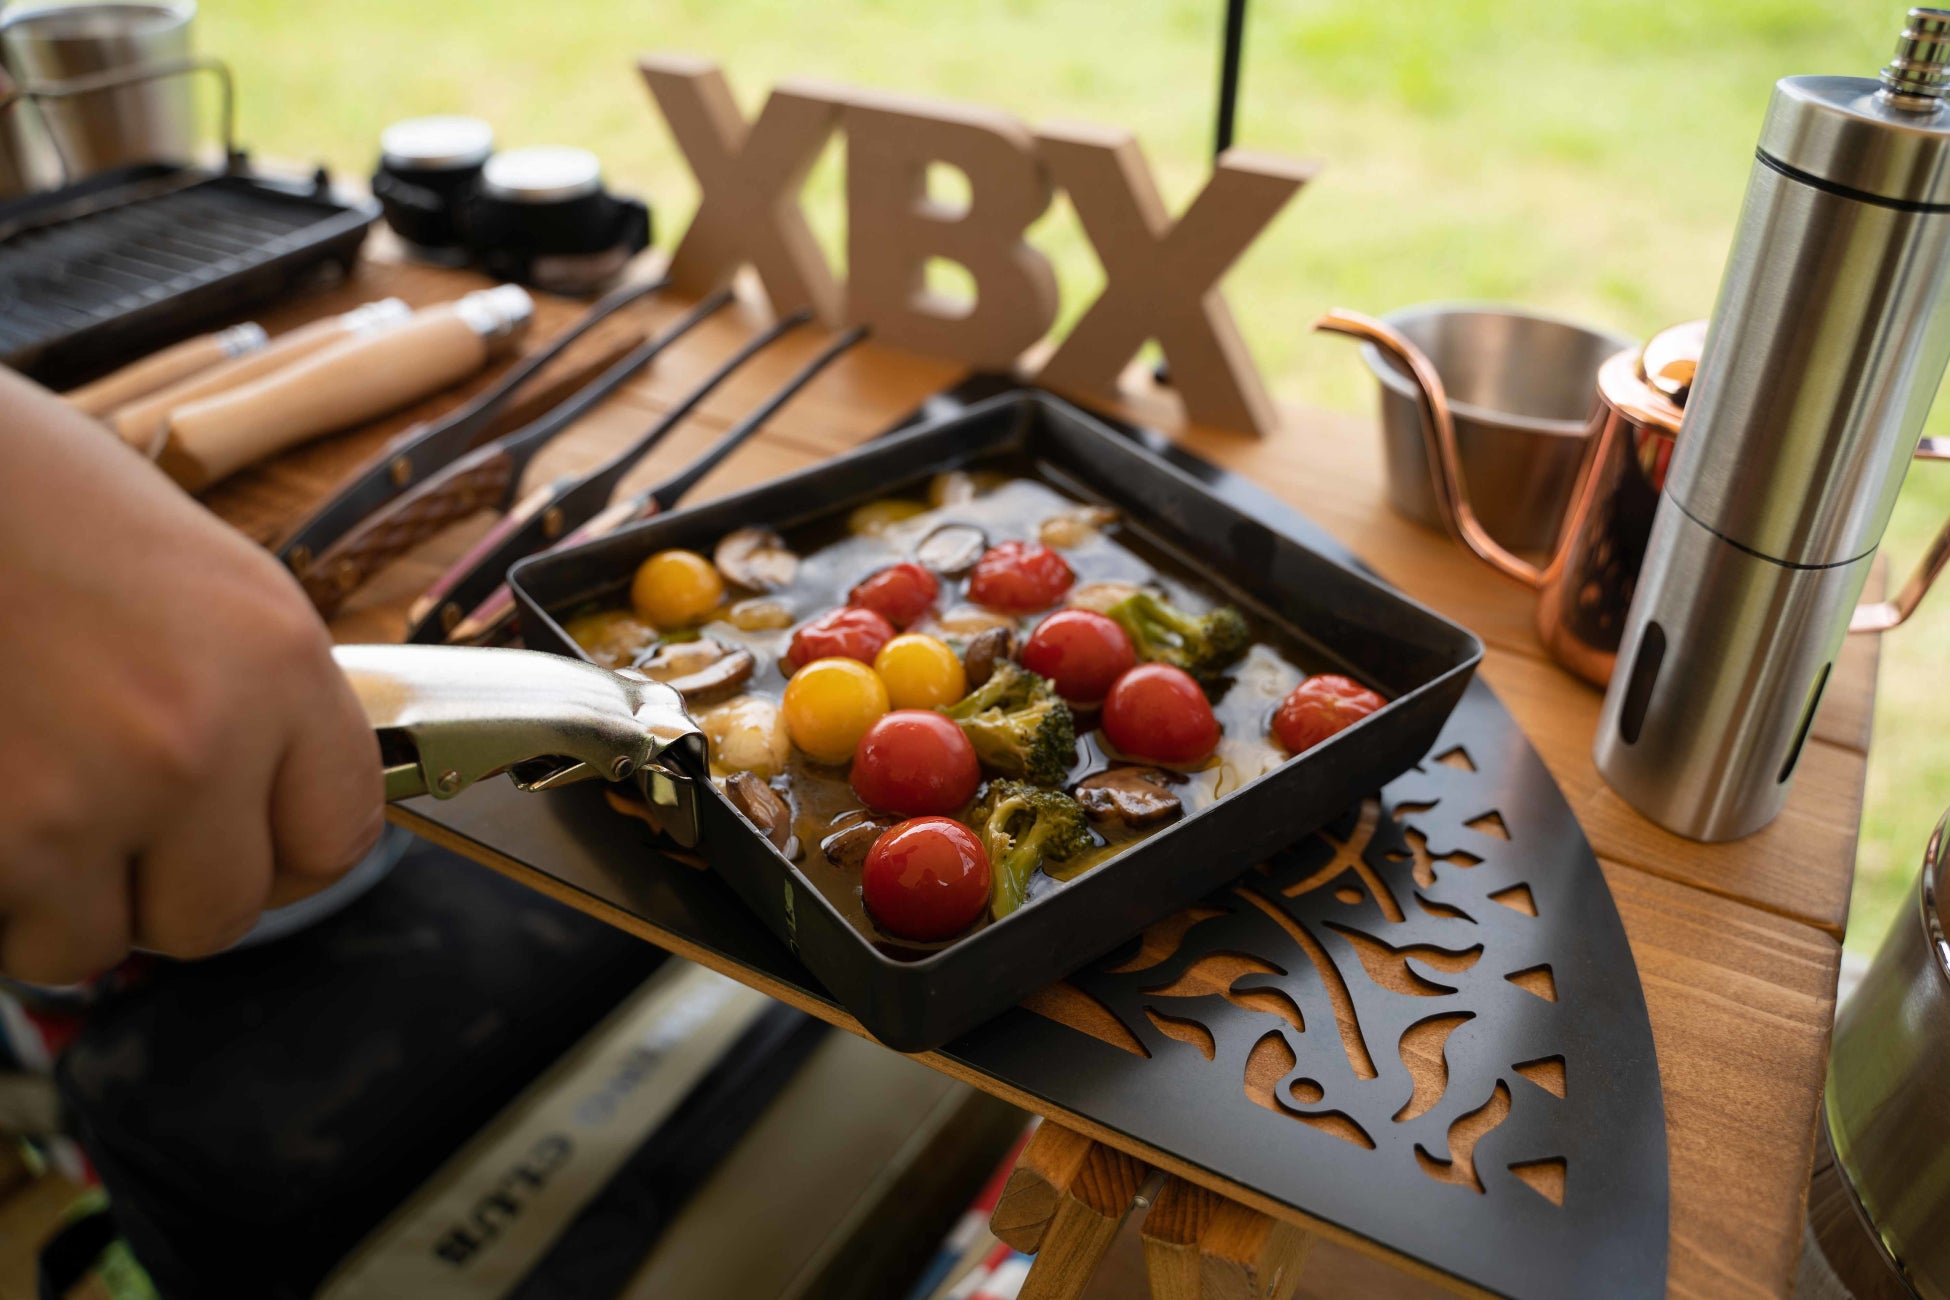 関西発アウトドア&ハウスギアブランド「xBx」が第一弾の新作を発表  10の特徴を持つ今までに無い全く新しい耐熱型ウッドテーブル『Xross Wood Table～クロス・ウッド・テーブル～』のサブ画像7